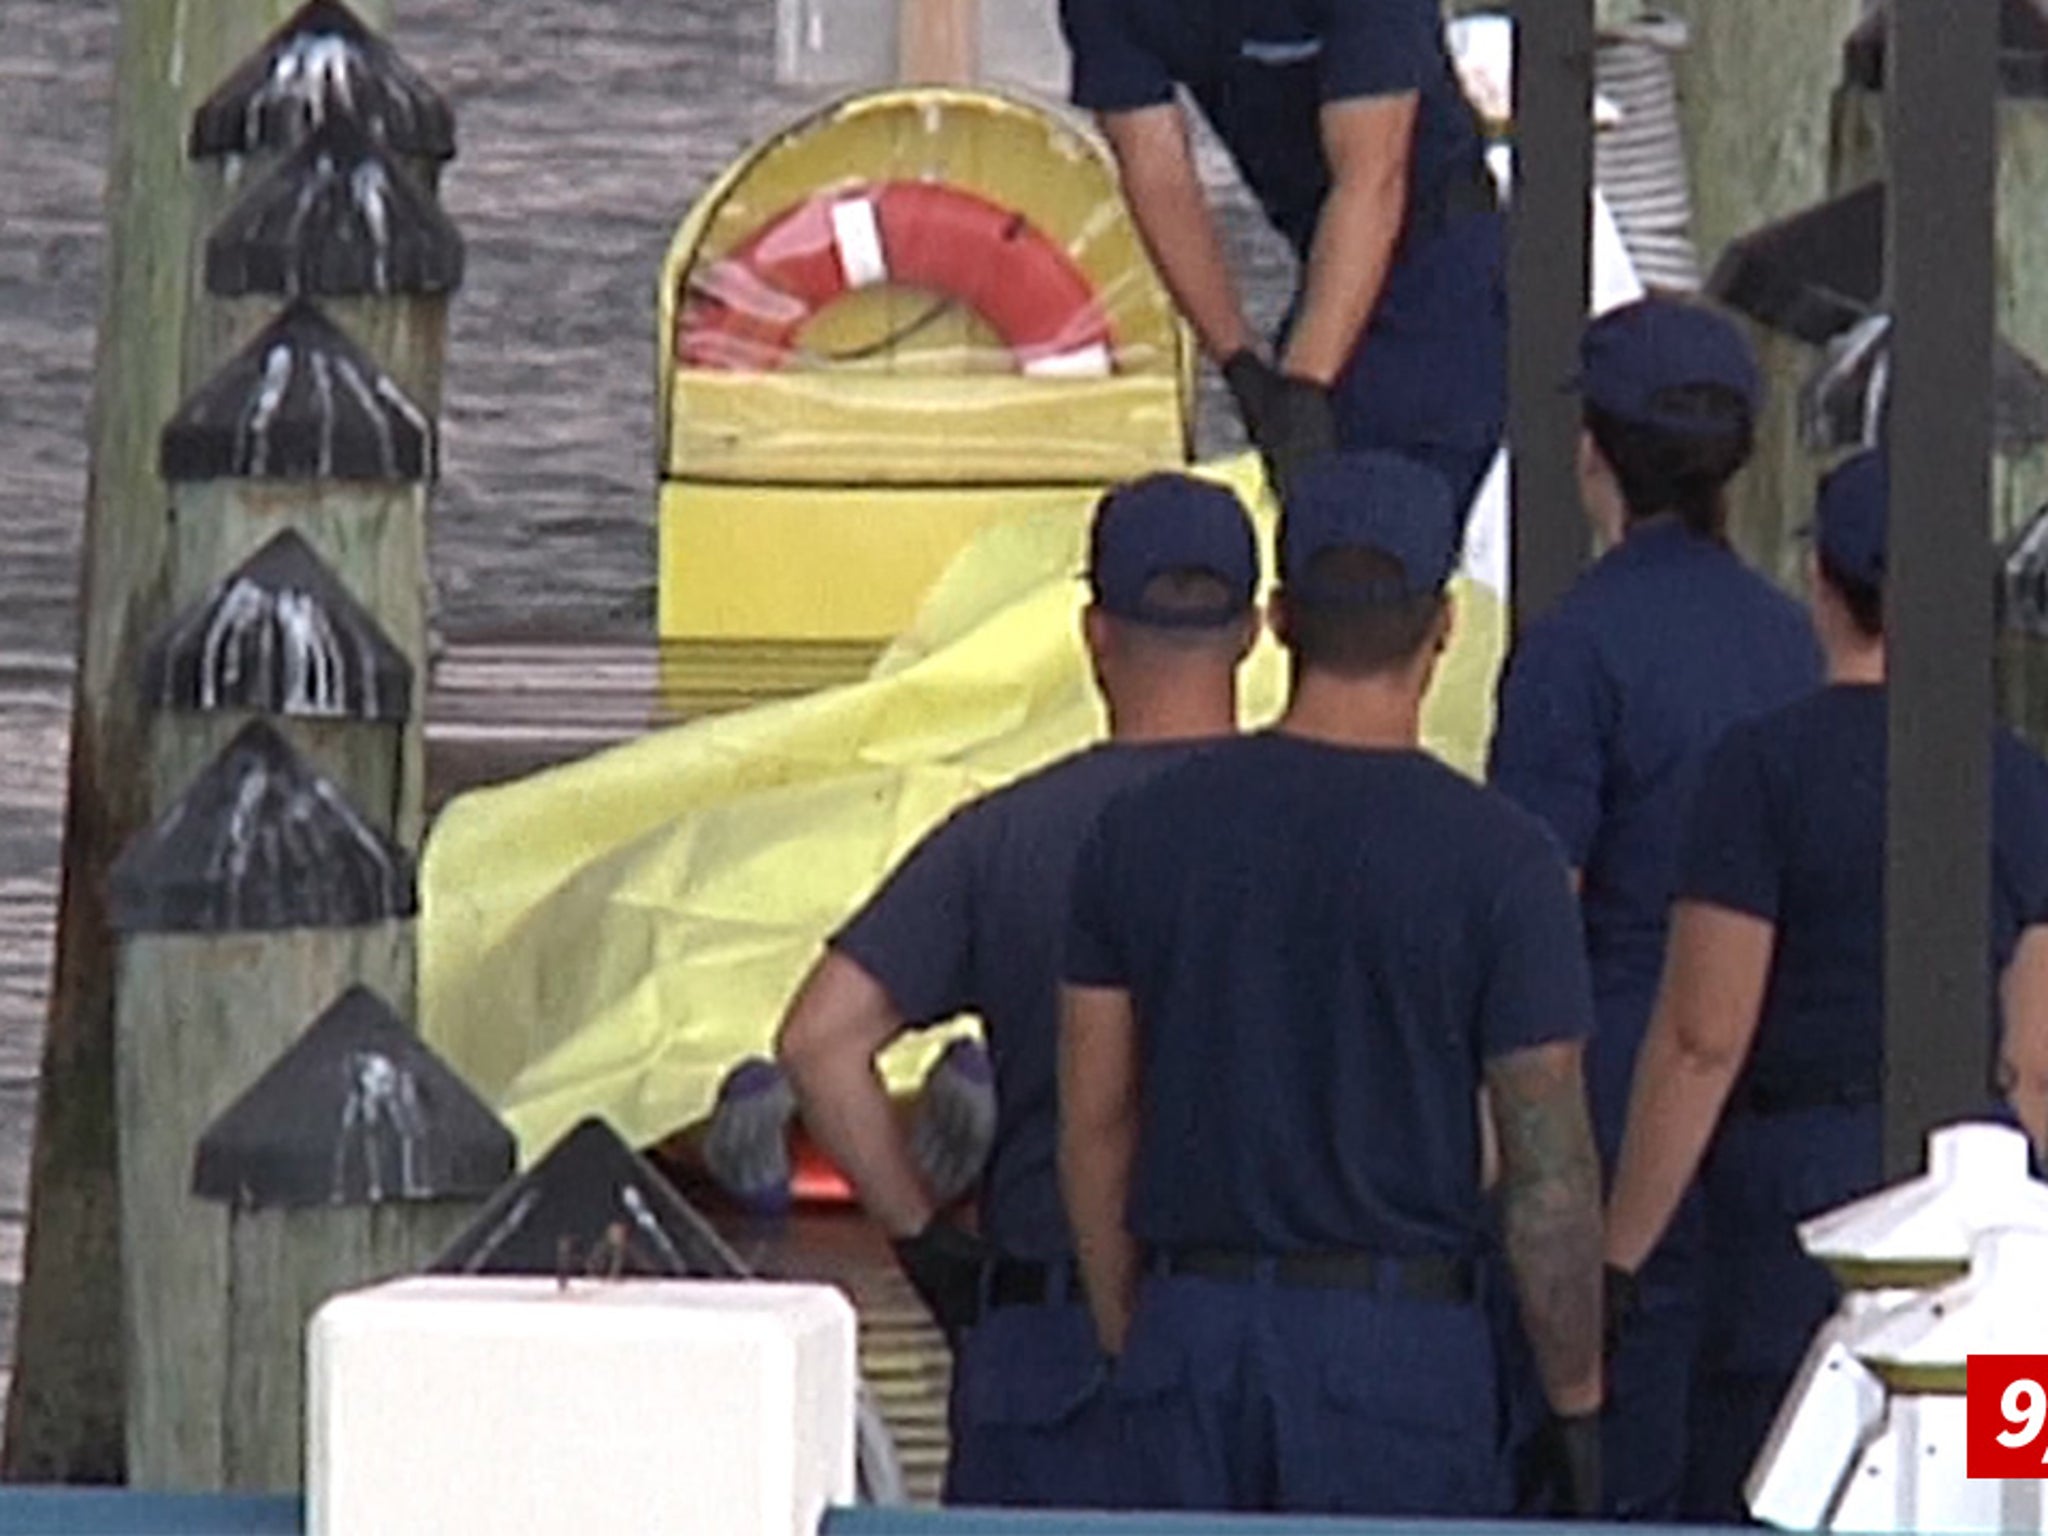 Jose Fernandez, 2 others smelled of alcohol after fatal boat crash